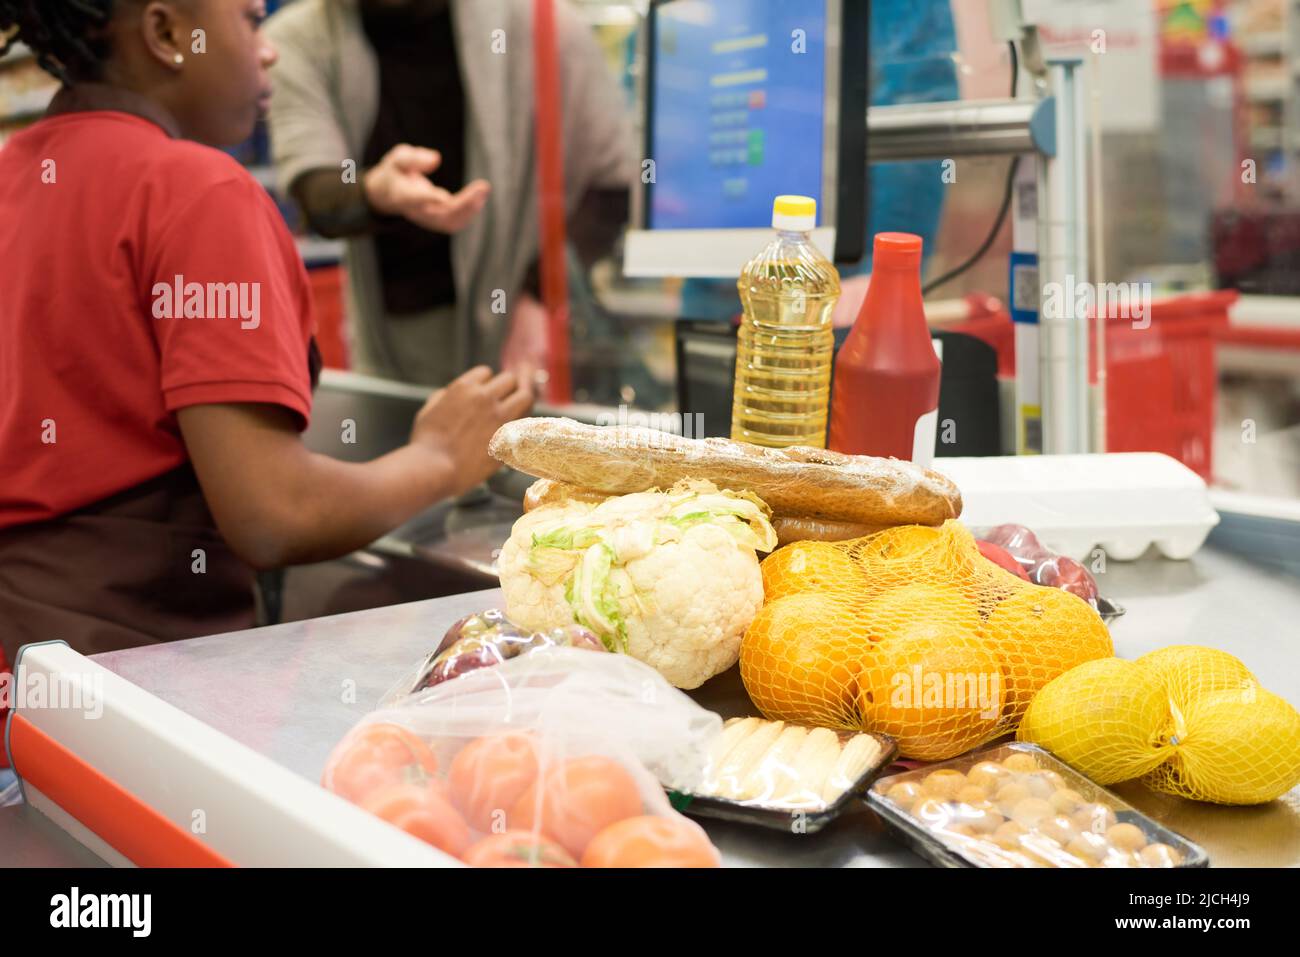 Frisch verpacktes Gemüse, Obst und andere Lebensmittelprodukte, die von einer Kassiererin gescannt wurden, die eine der Einkäufer im Supermarkt bedient Stockfoto